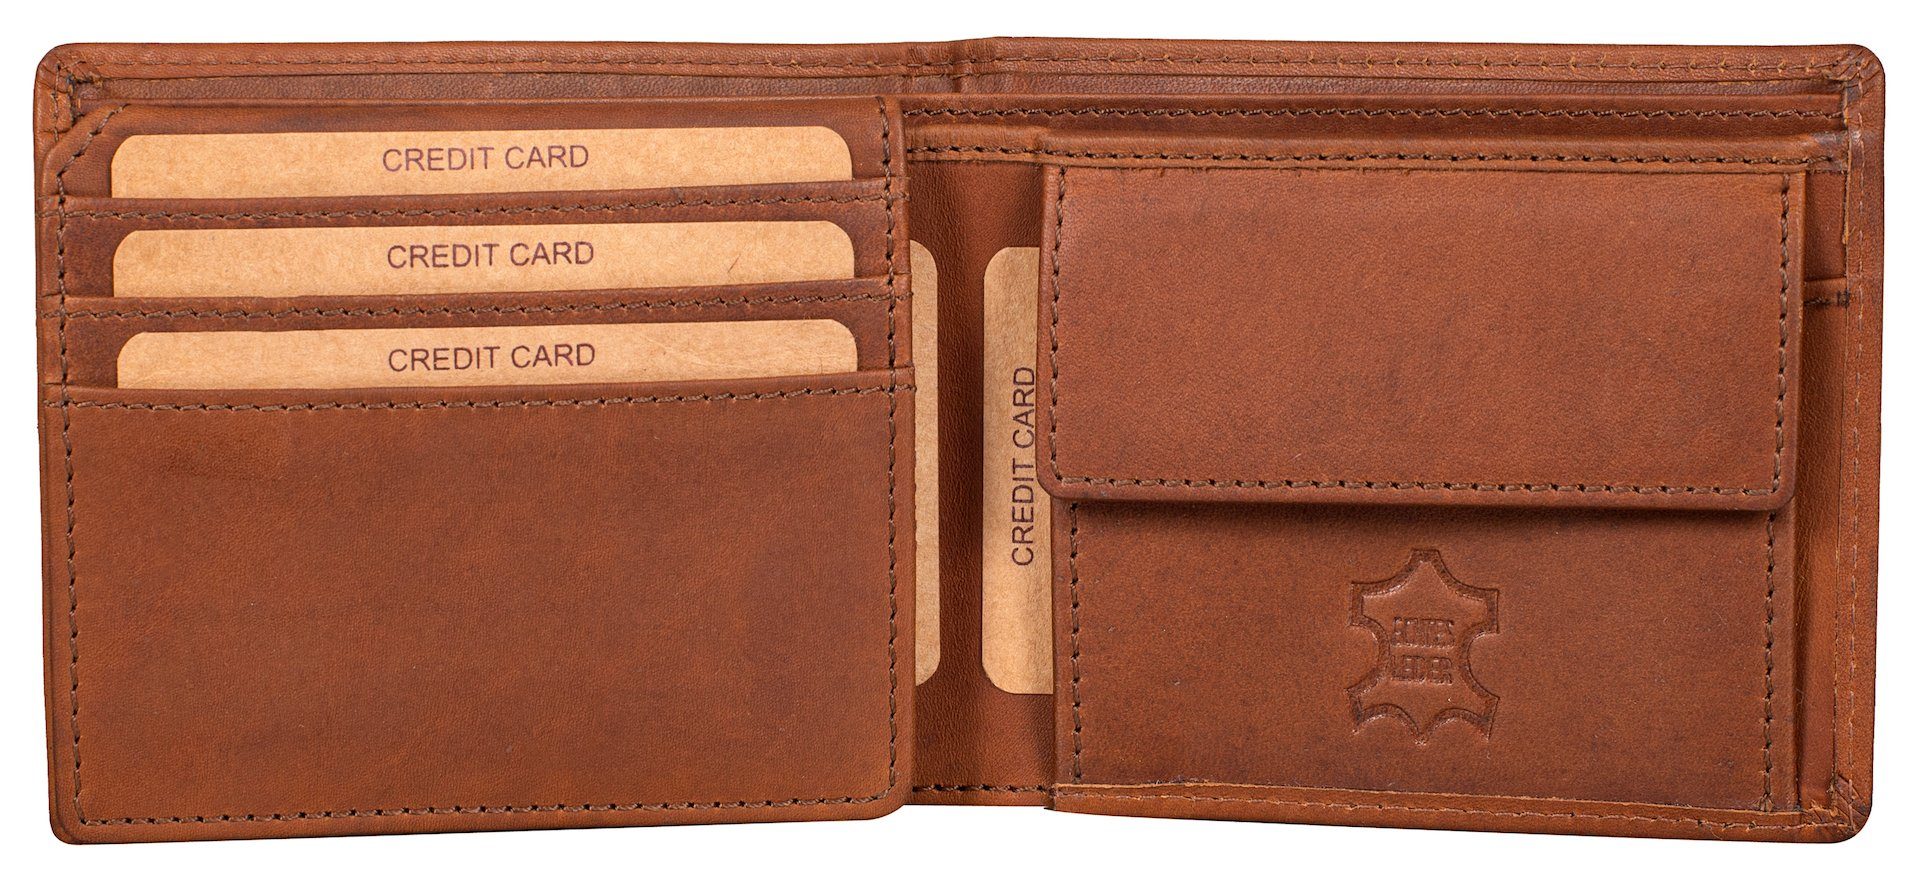 Benthill Geldbörse Herren Geldbeutel RFID-Schutz Slim Portemonnaie Echt Leder, RFID-Schutz Kartenfächer Münzfach